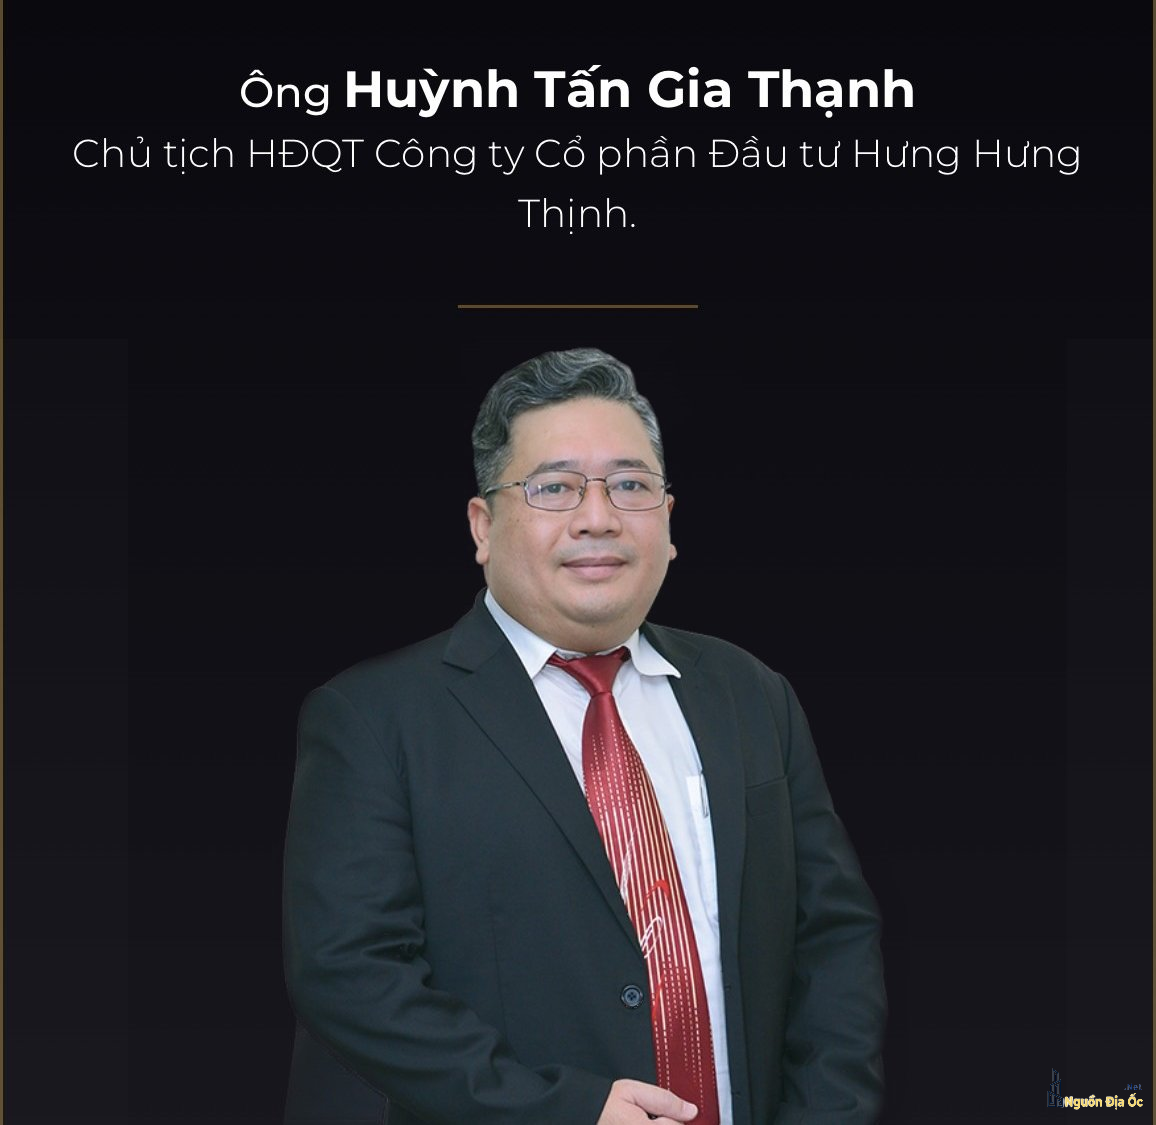 Chủ tịch Hưng Hưng Thịnh, phân phối chung cư Chí Linh Center